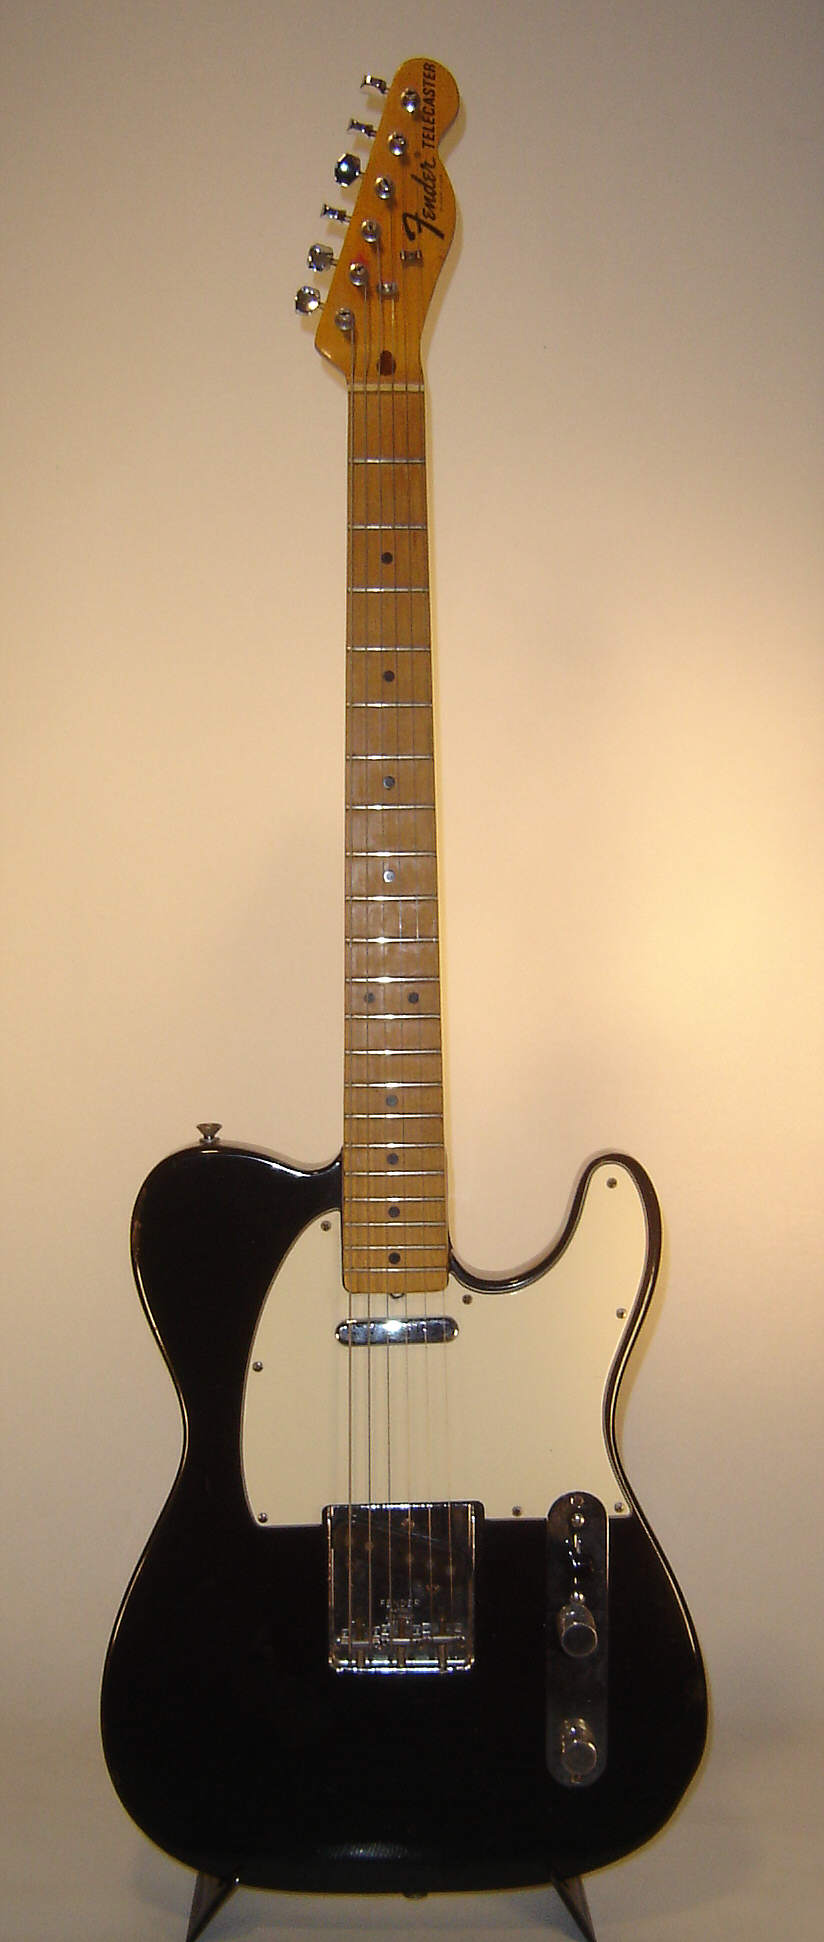 Fender_Telecaster_1972_black_front.jpg